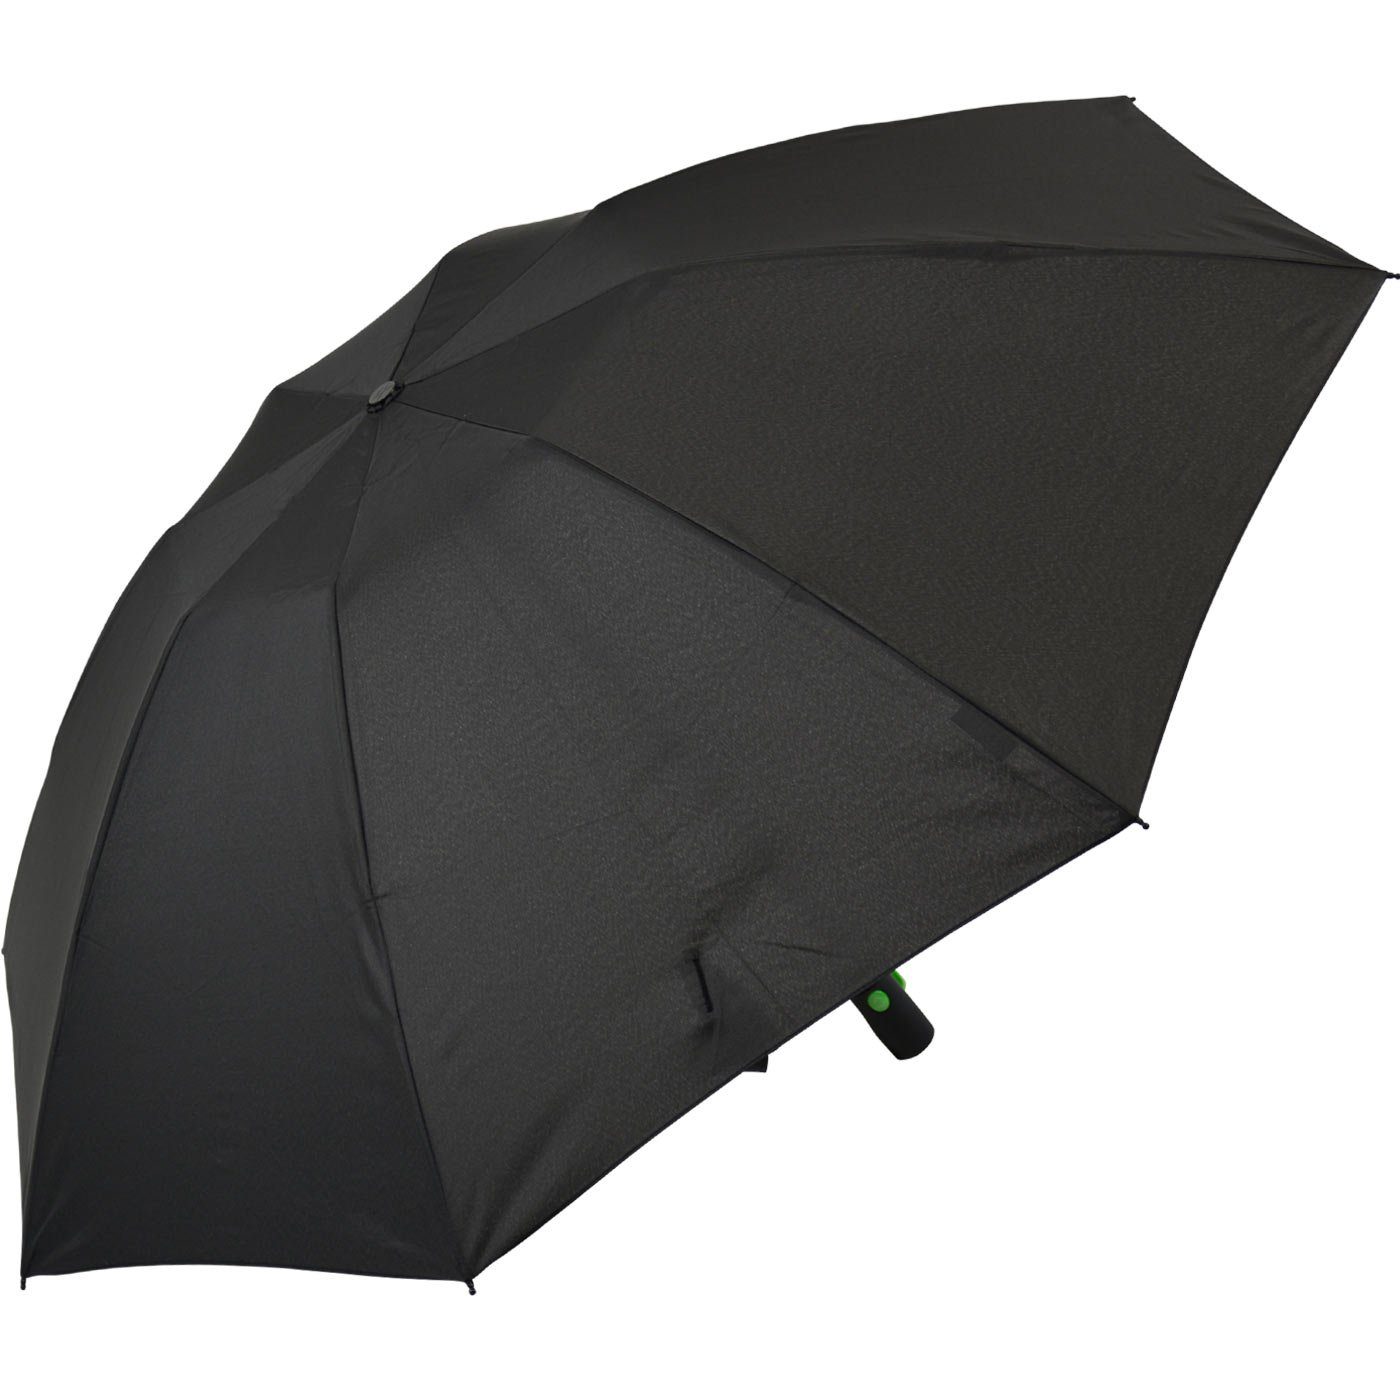 Speichen mit iX-brella bunten Fiberglas-Automatiksch, umgekehrt Reverse schwarz-grün Taschenregenschirm öffnender stabilen